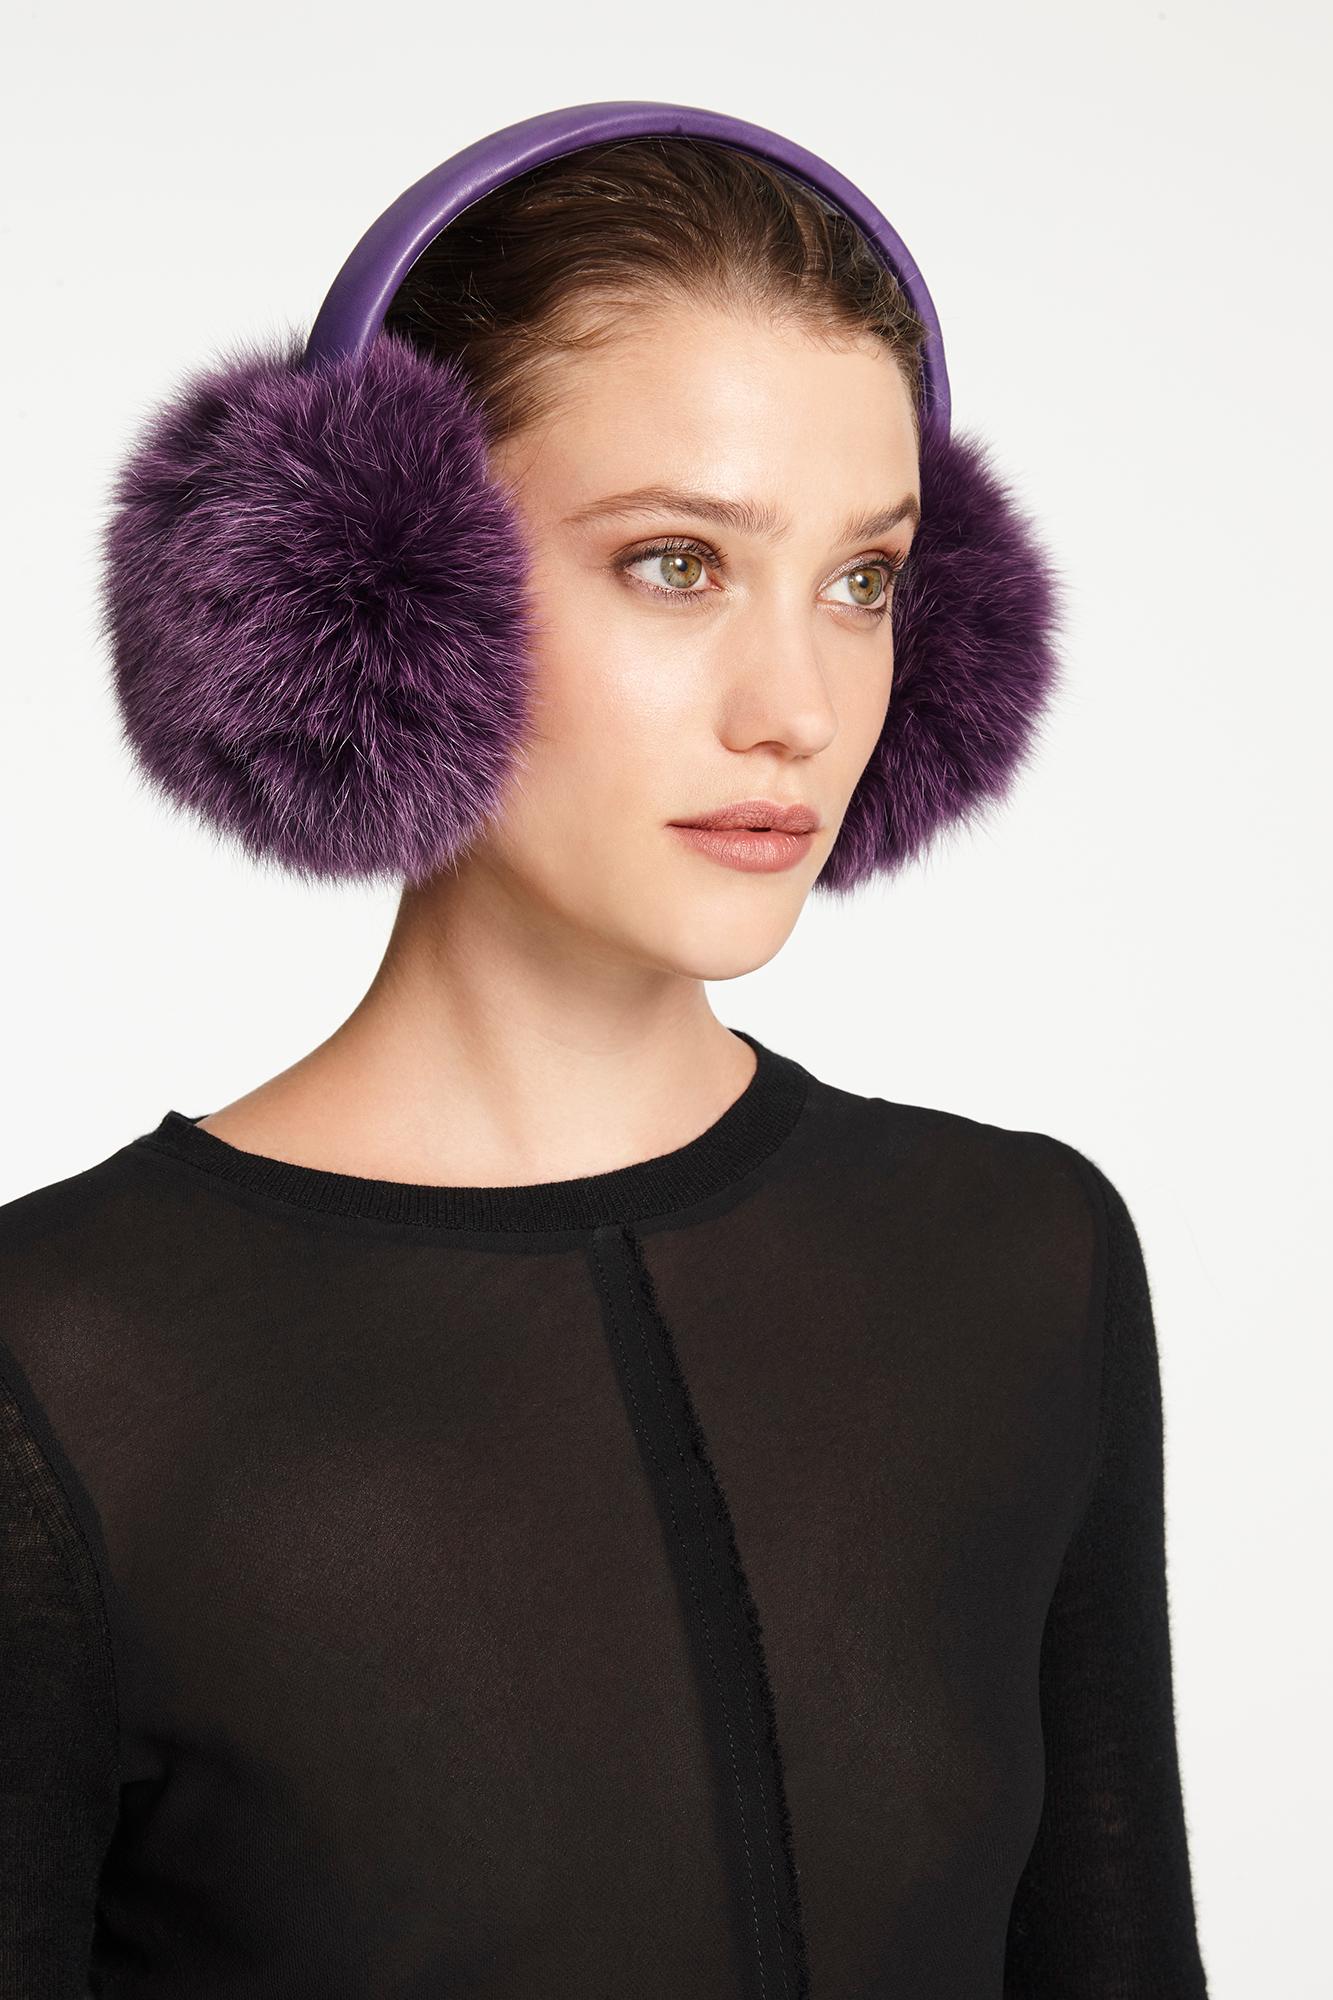 Women's or Men's Verheyen London Ear Muffs in Amethyst Purple Fox Fur